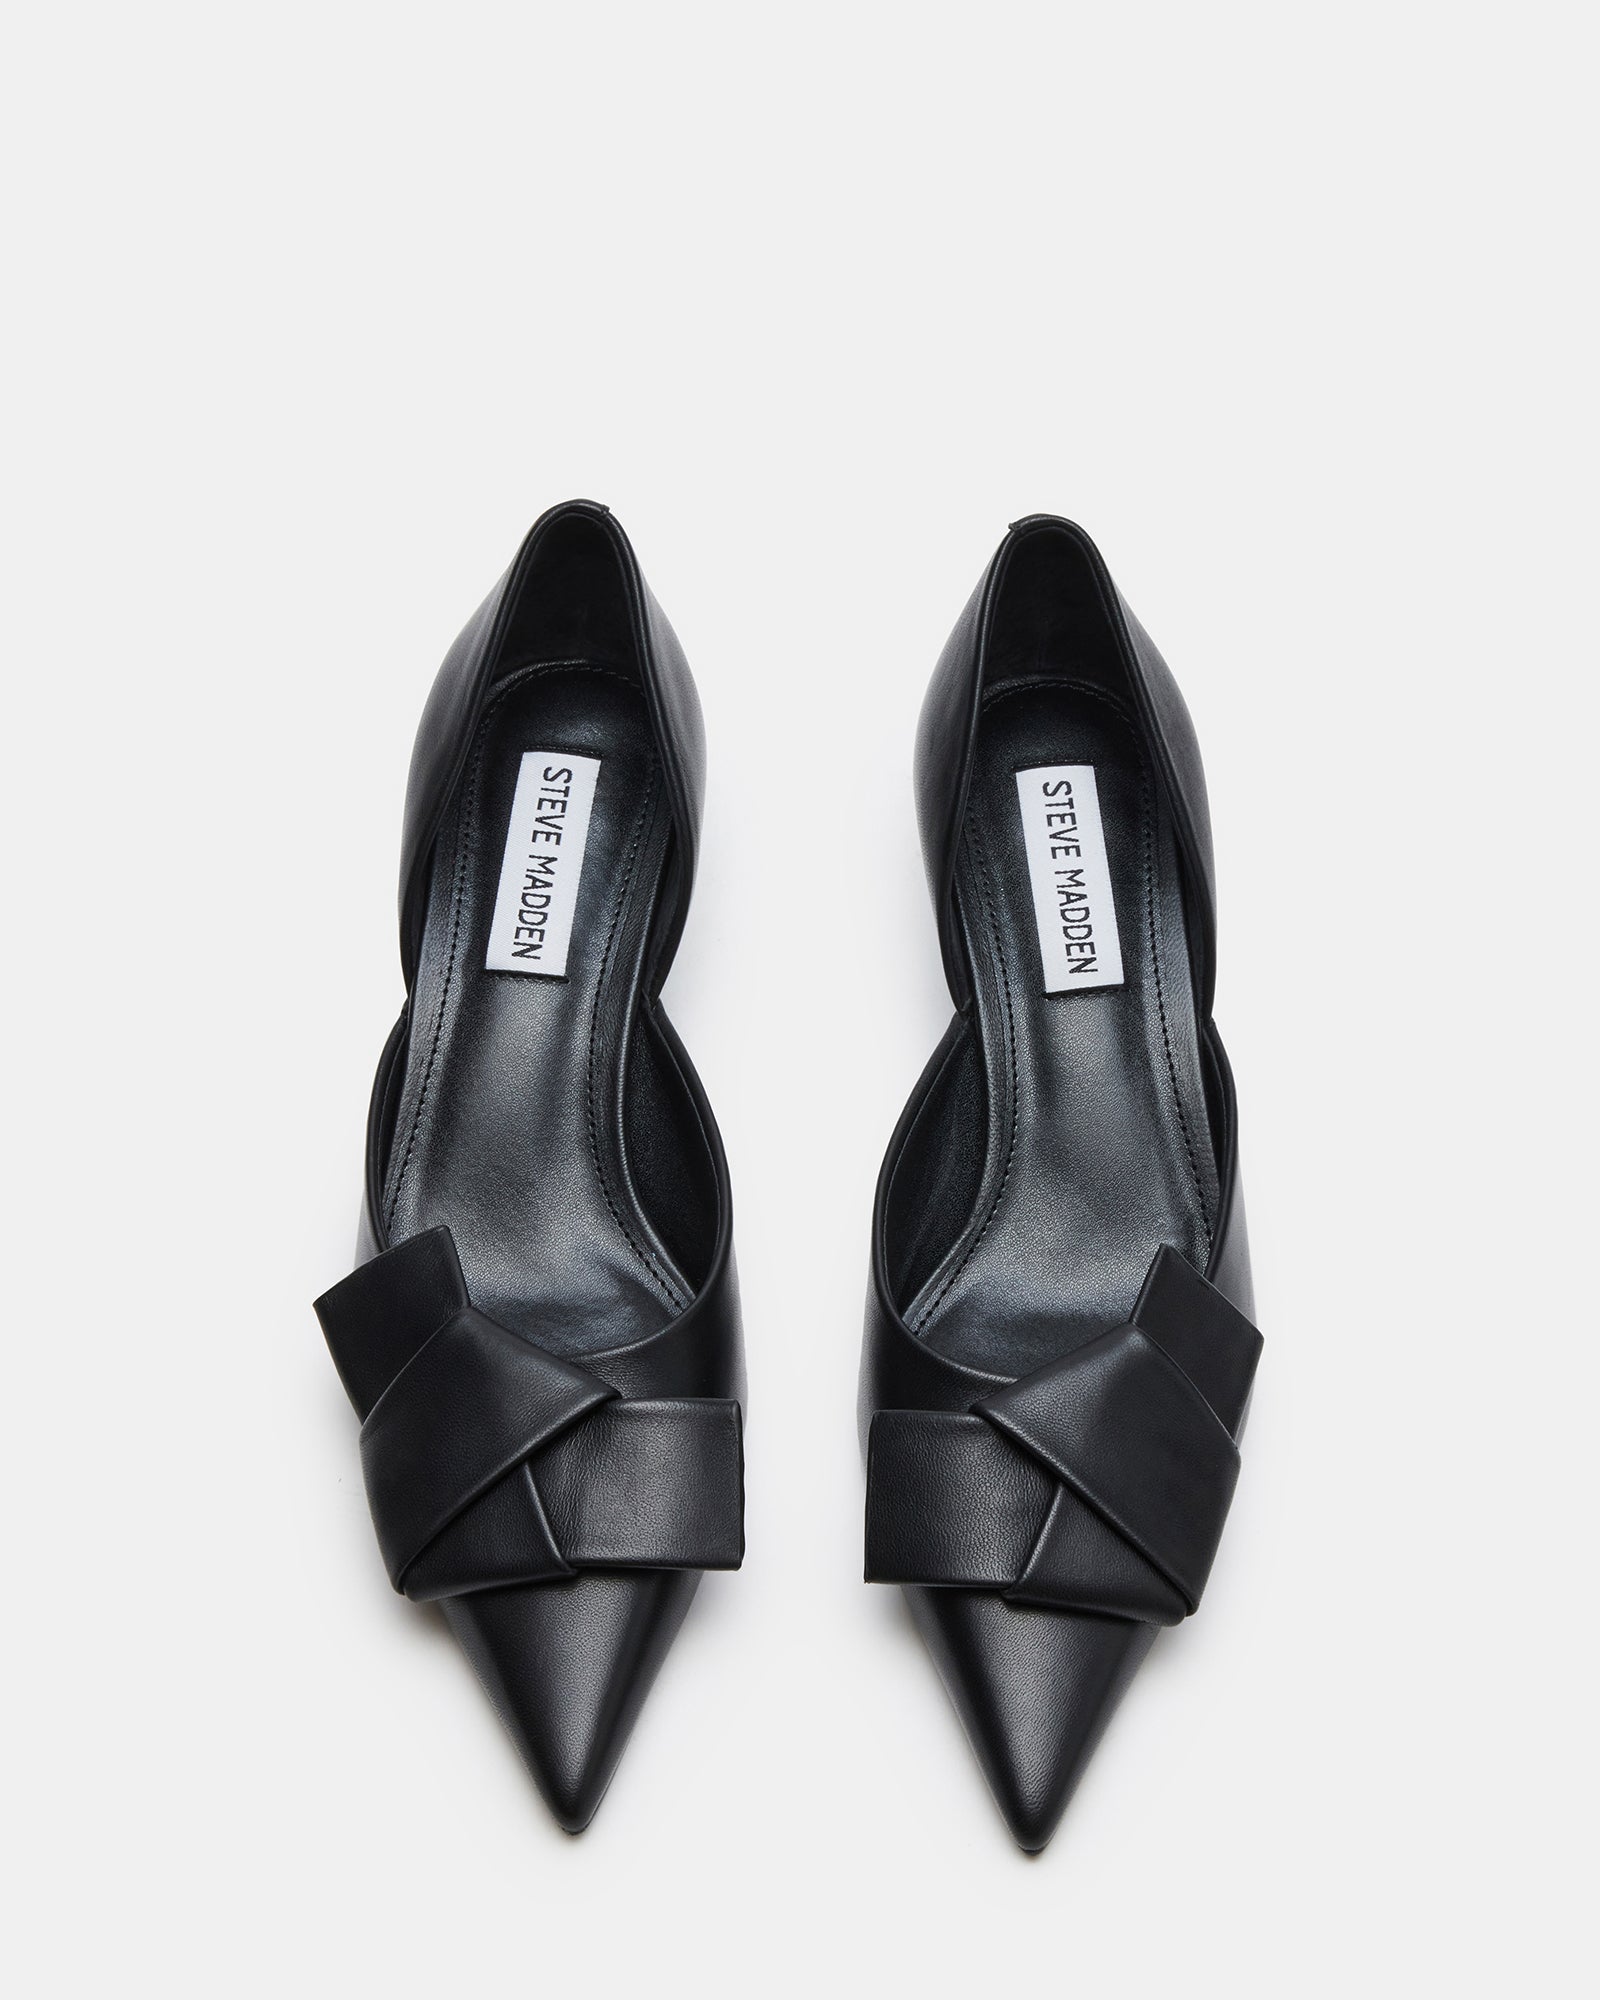 LAKOTA Black Leather Bow Kitten Heel | Women's Heels – Steve Madden